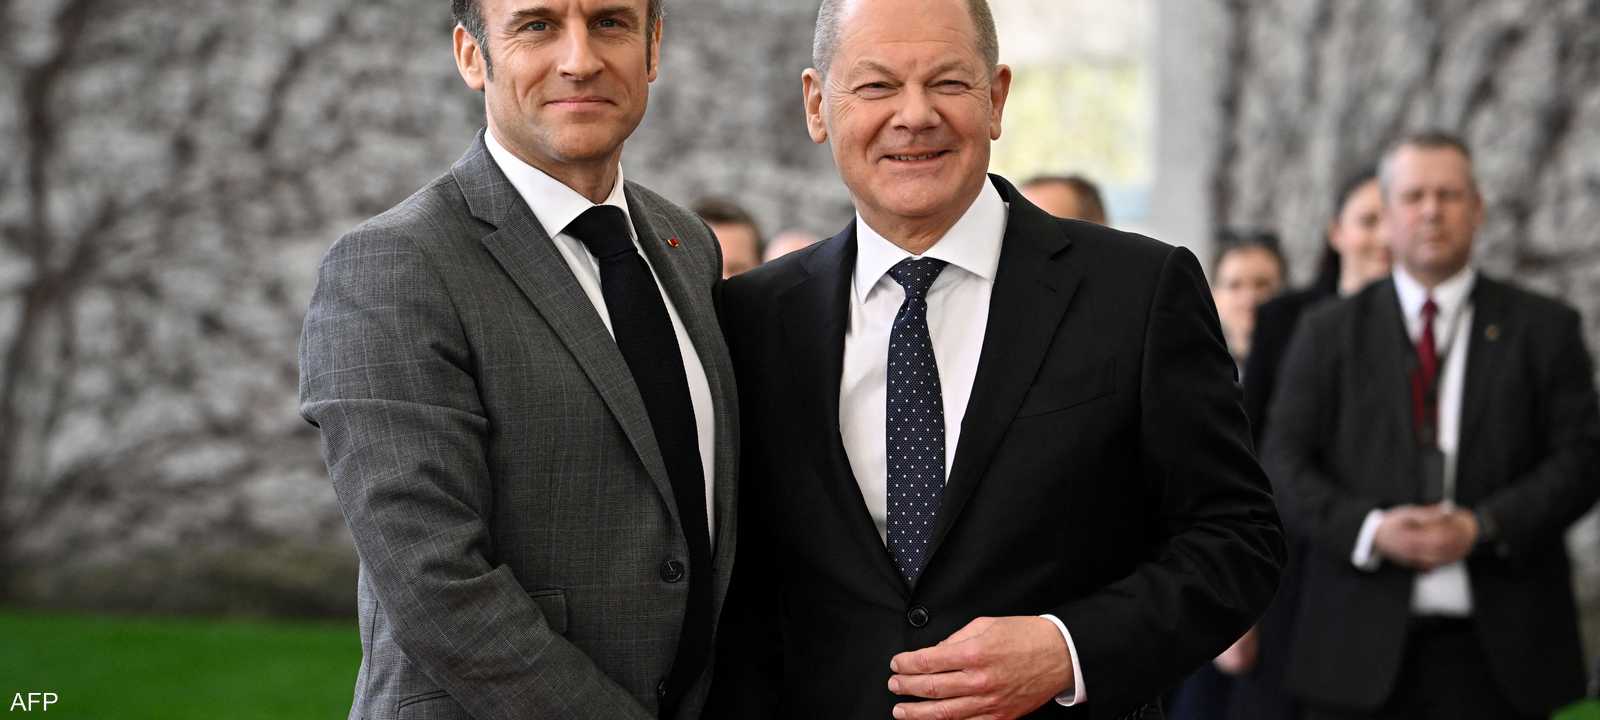 الرئيس الفرنسي ماكرون يصافح المستشار الألماني أولاف شولتس